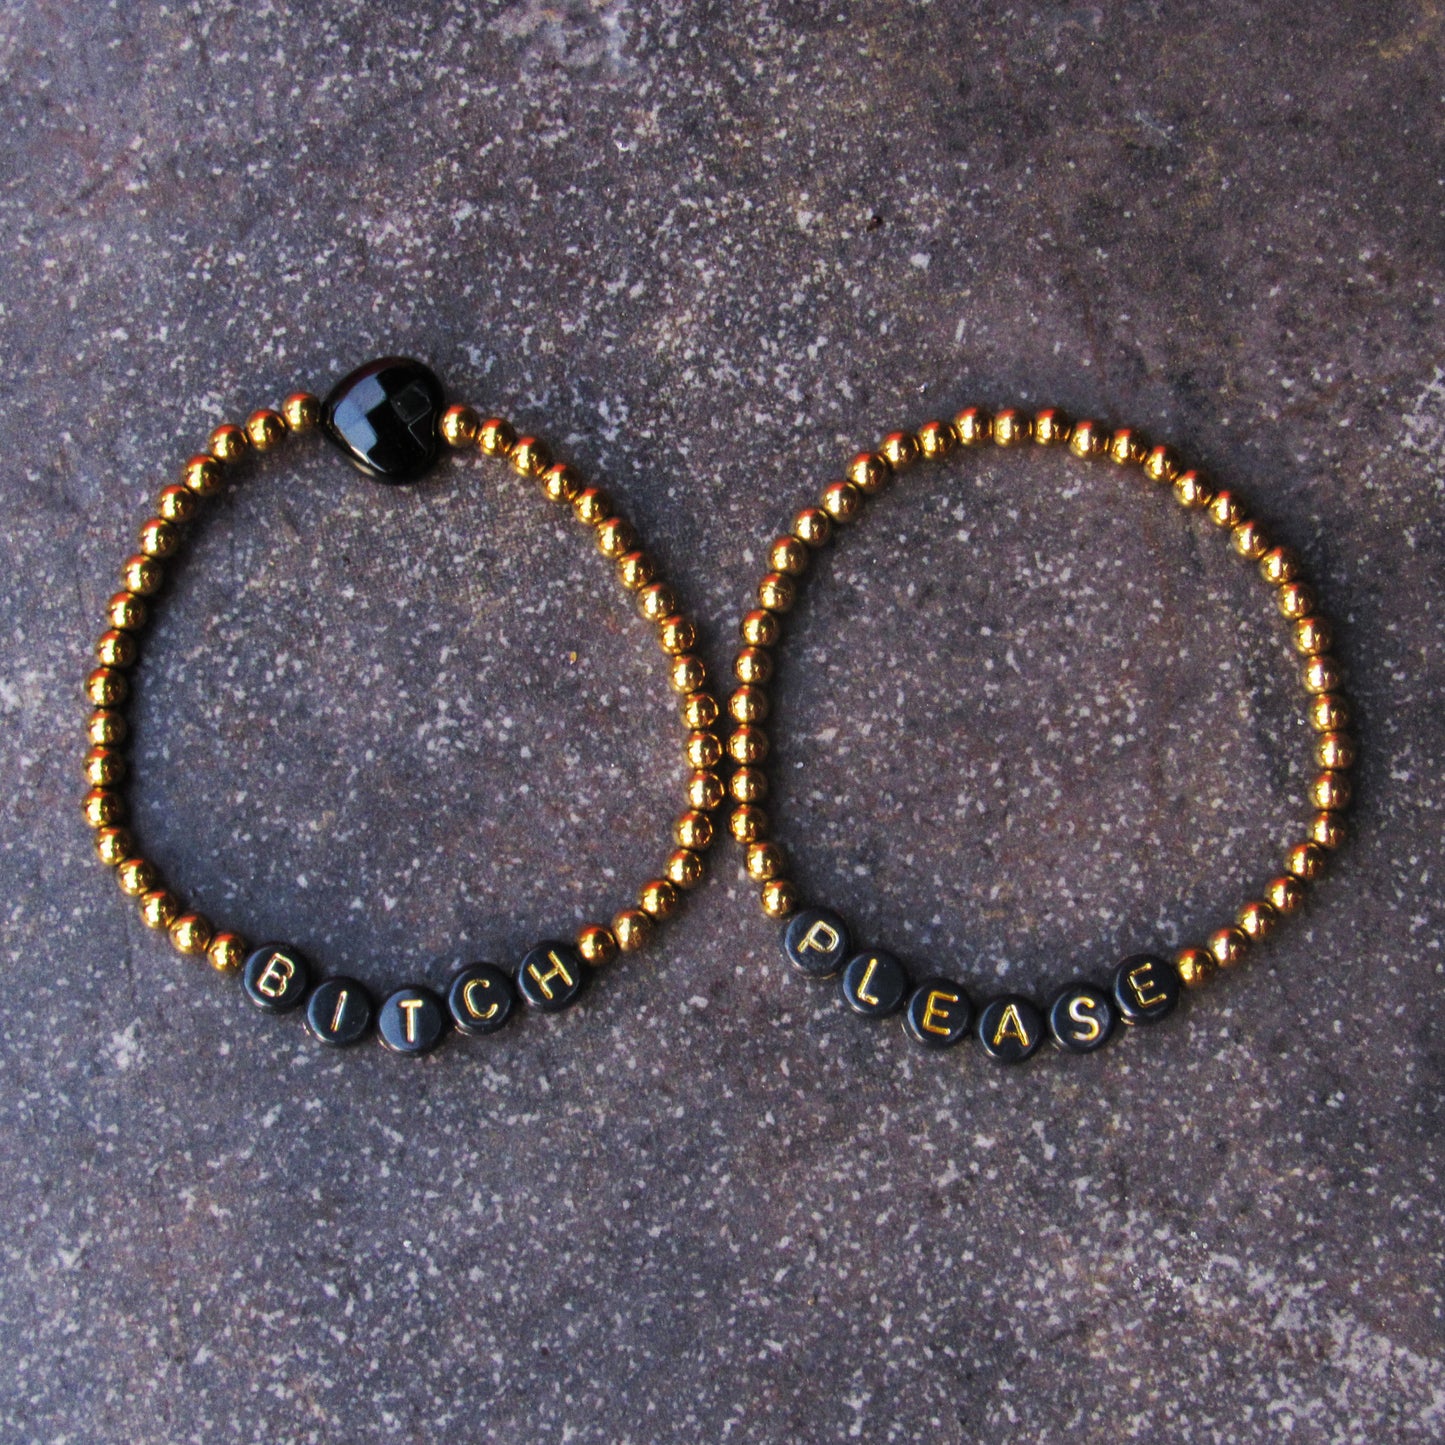 Hematite and Onyx gemstone “BITCH PLEASE” Stretch Bracelets